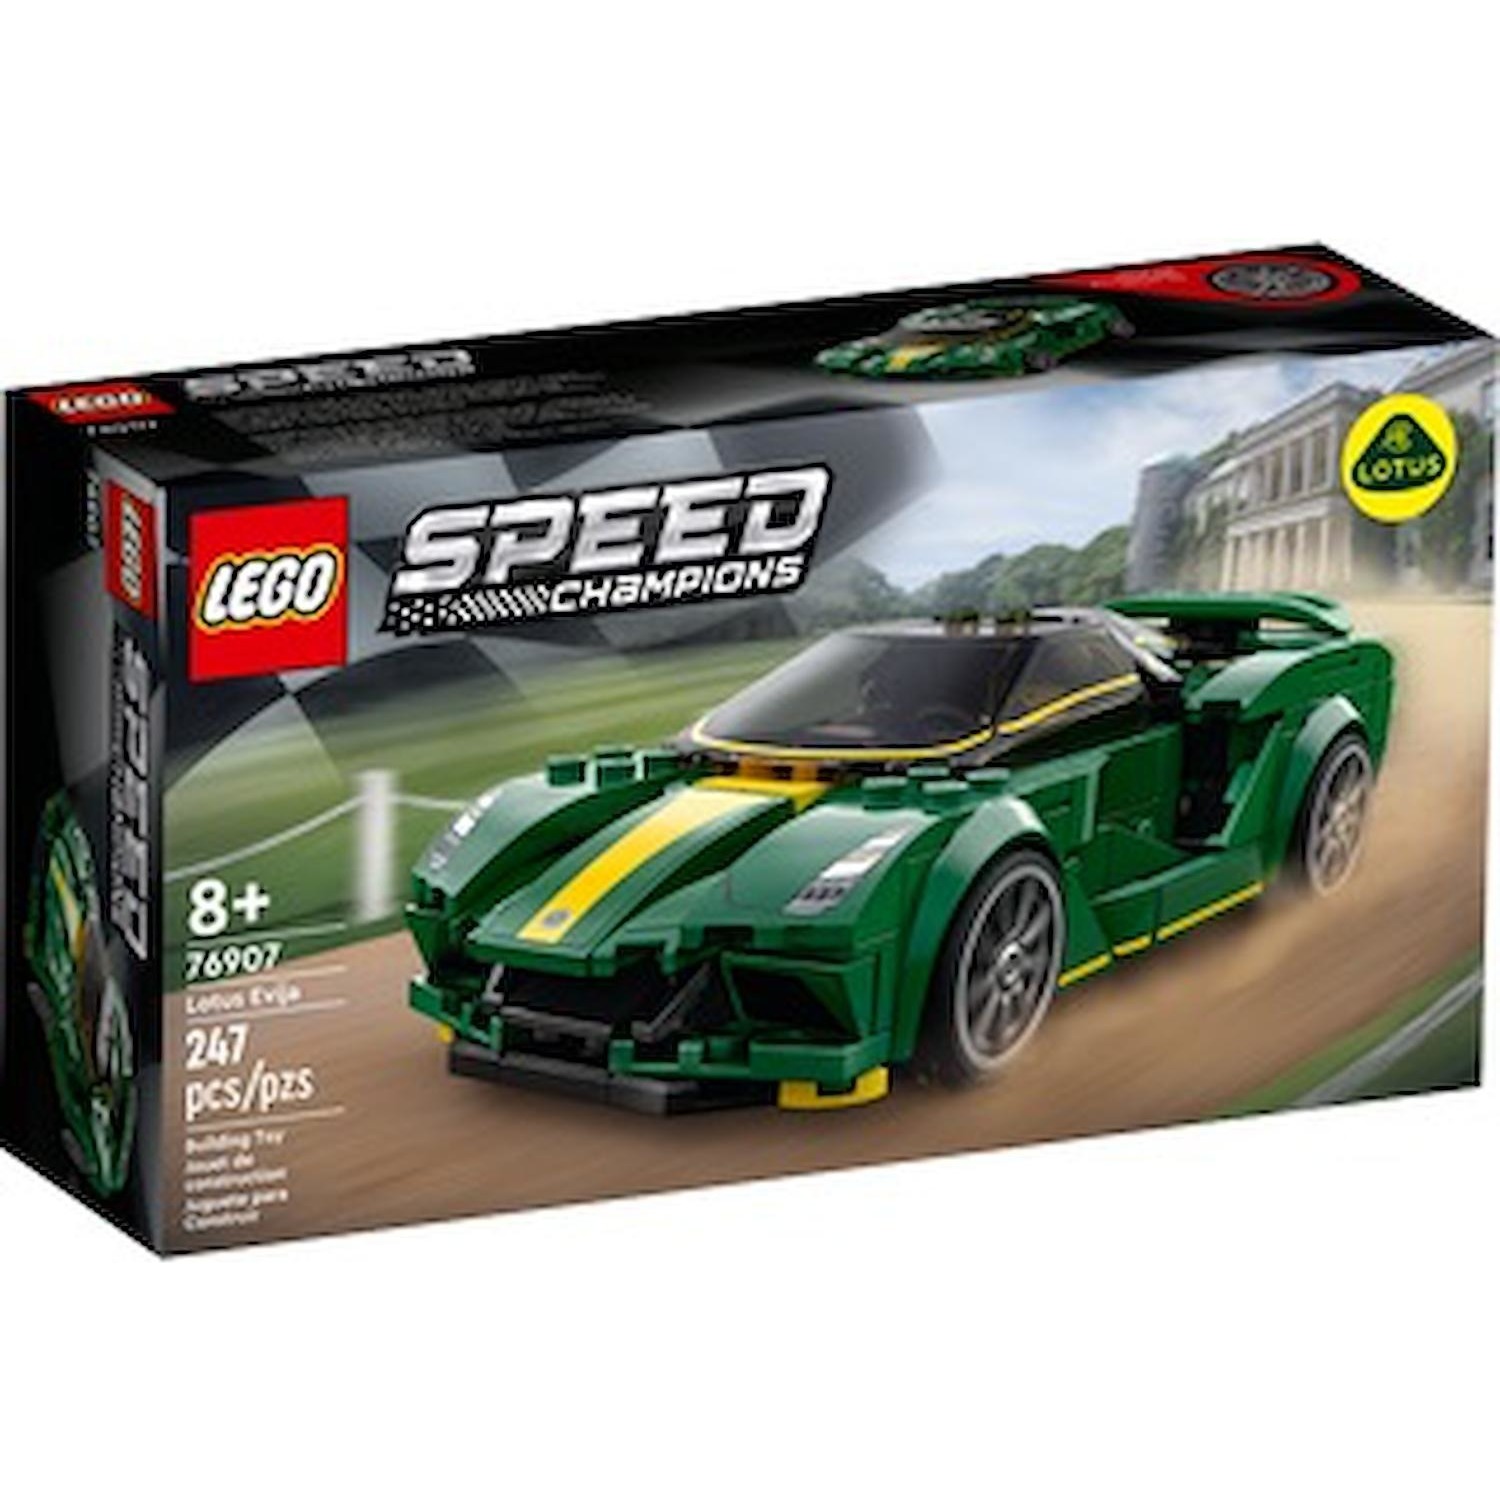 Immagine per Lego Speed Lotus Eviia da DIMOStore